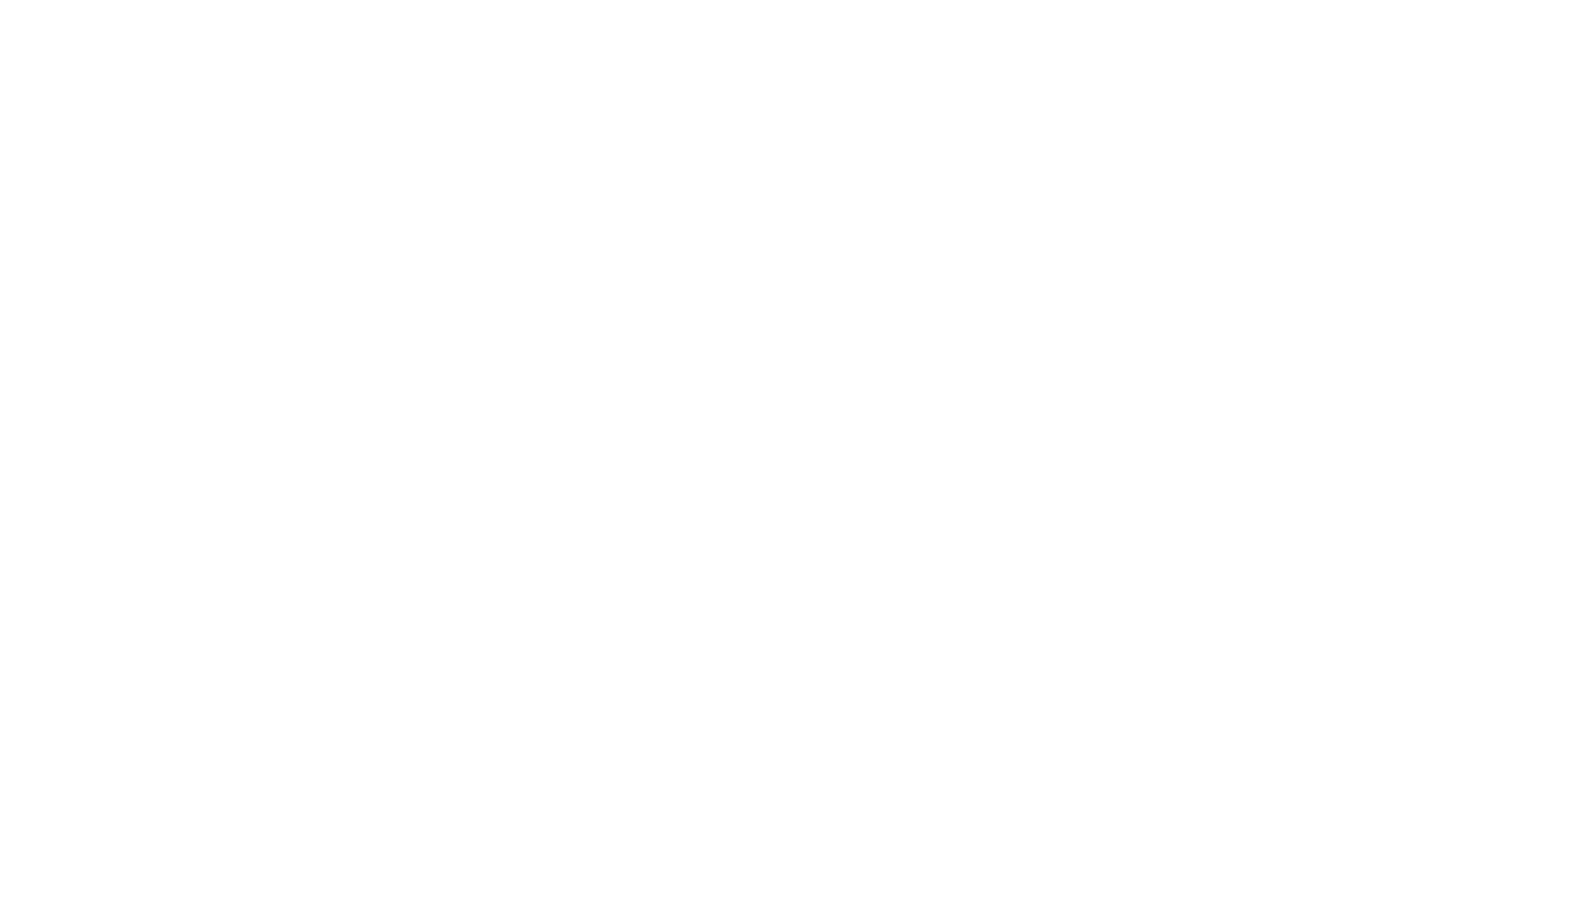 Eine vereinfachte Darstellung des kleinen Oldtimers als Logo